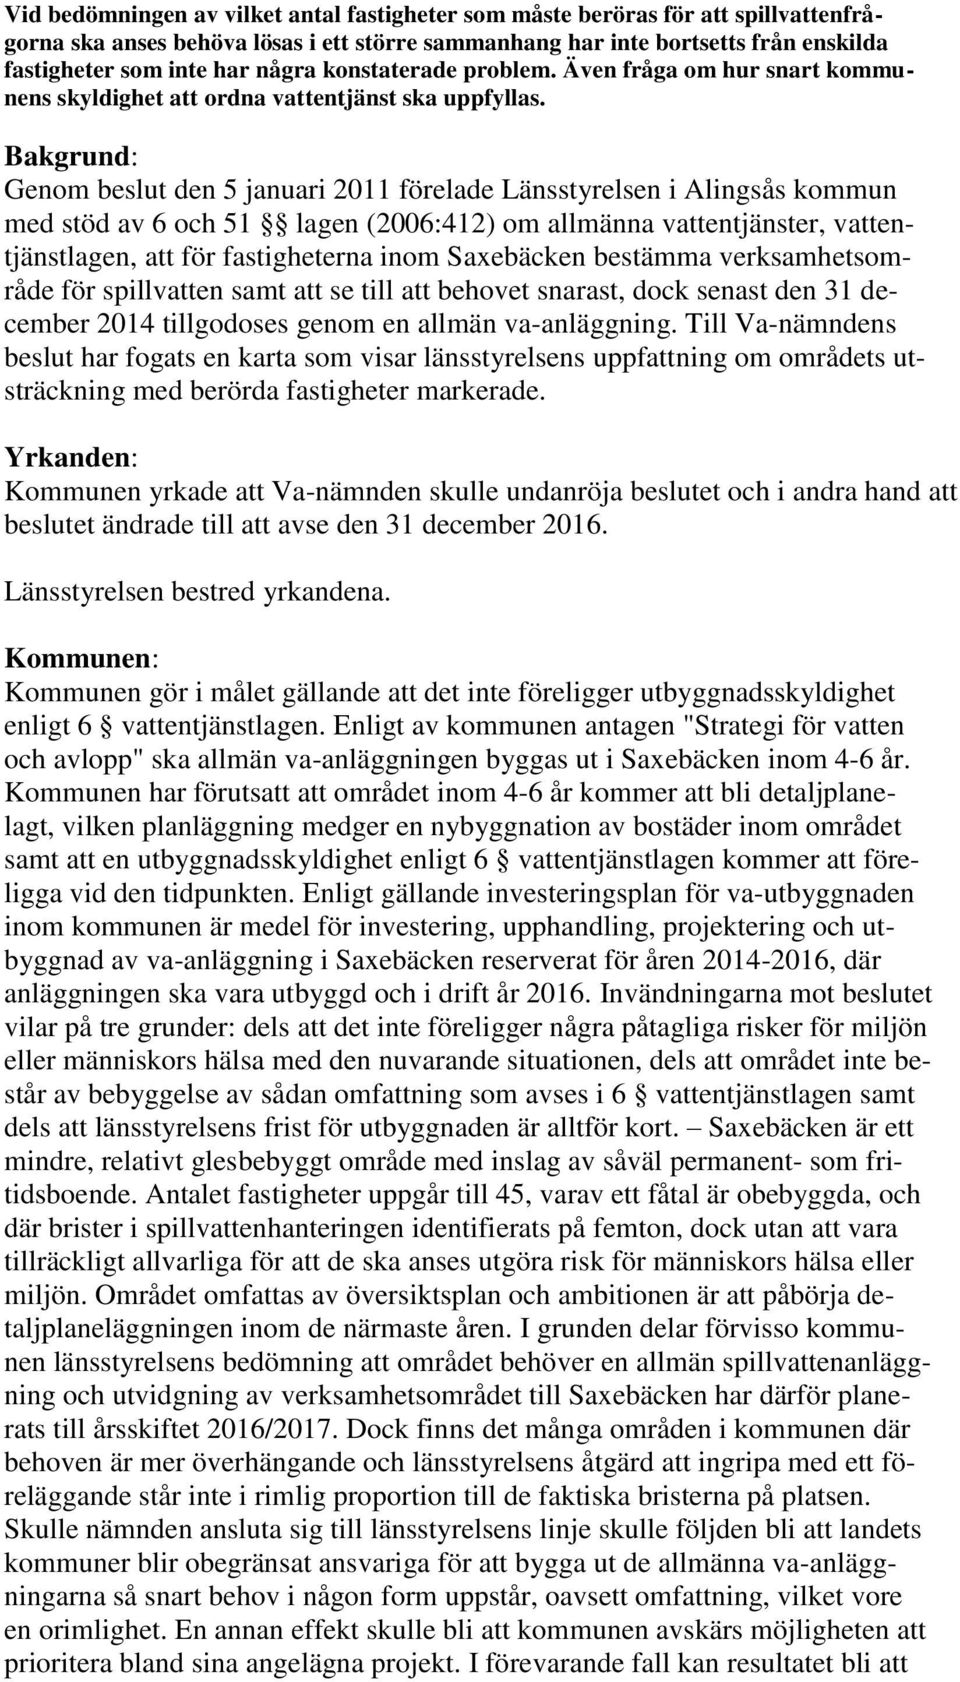 Bakgrund: Genom beslut den 5 januari 2011 förelade Länsstyrelsen i Alingsås kommun med stöd av 6 och 51 lagen (2006:412) om allmänna vattentjänster, vattentjänstlagen, att för fastigheterna inom